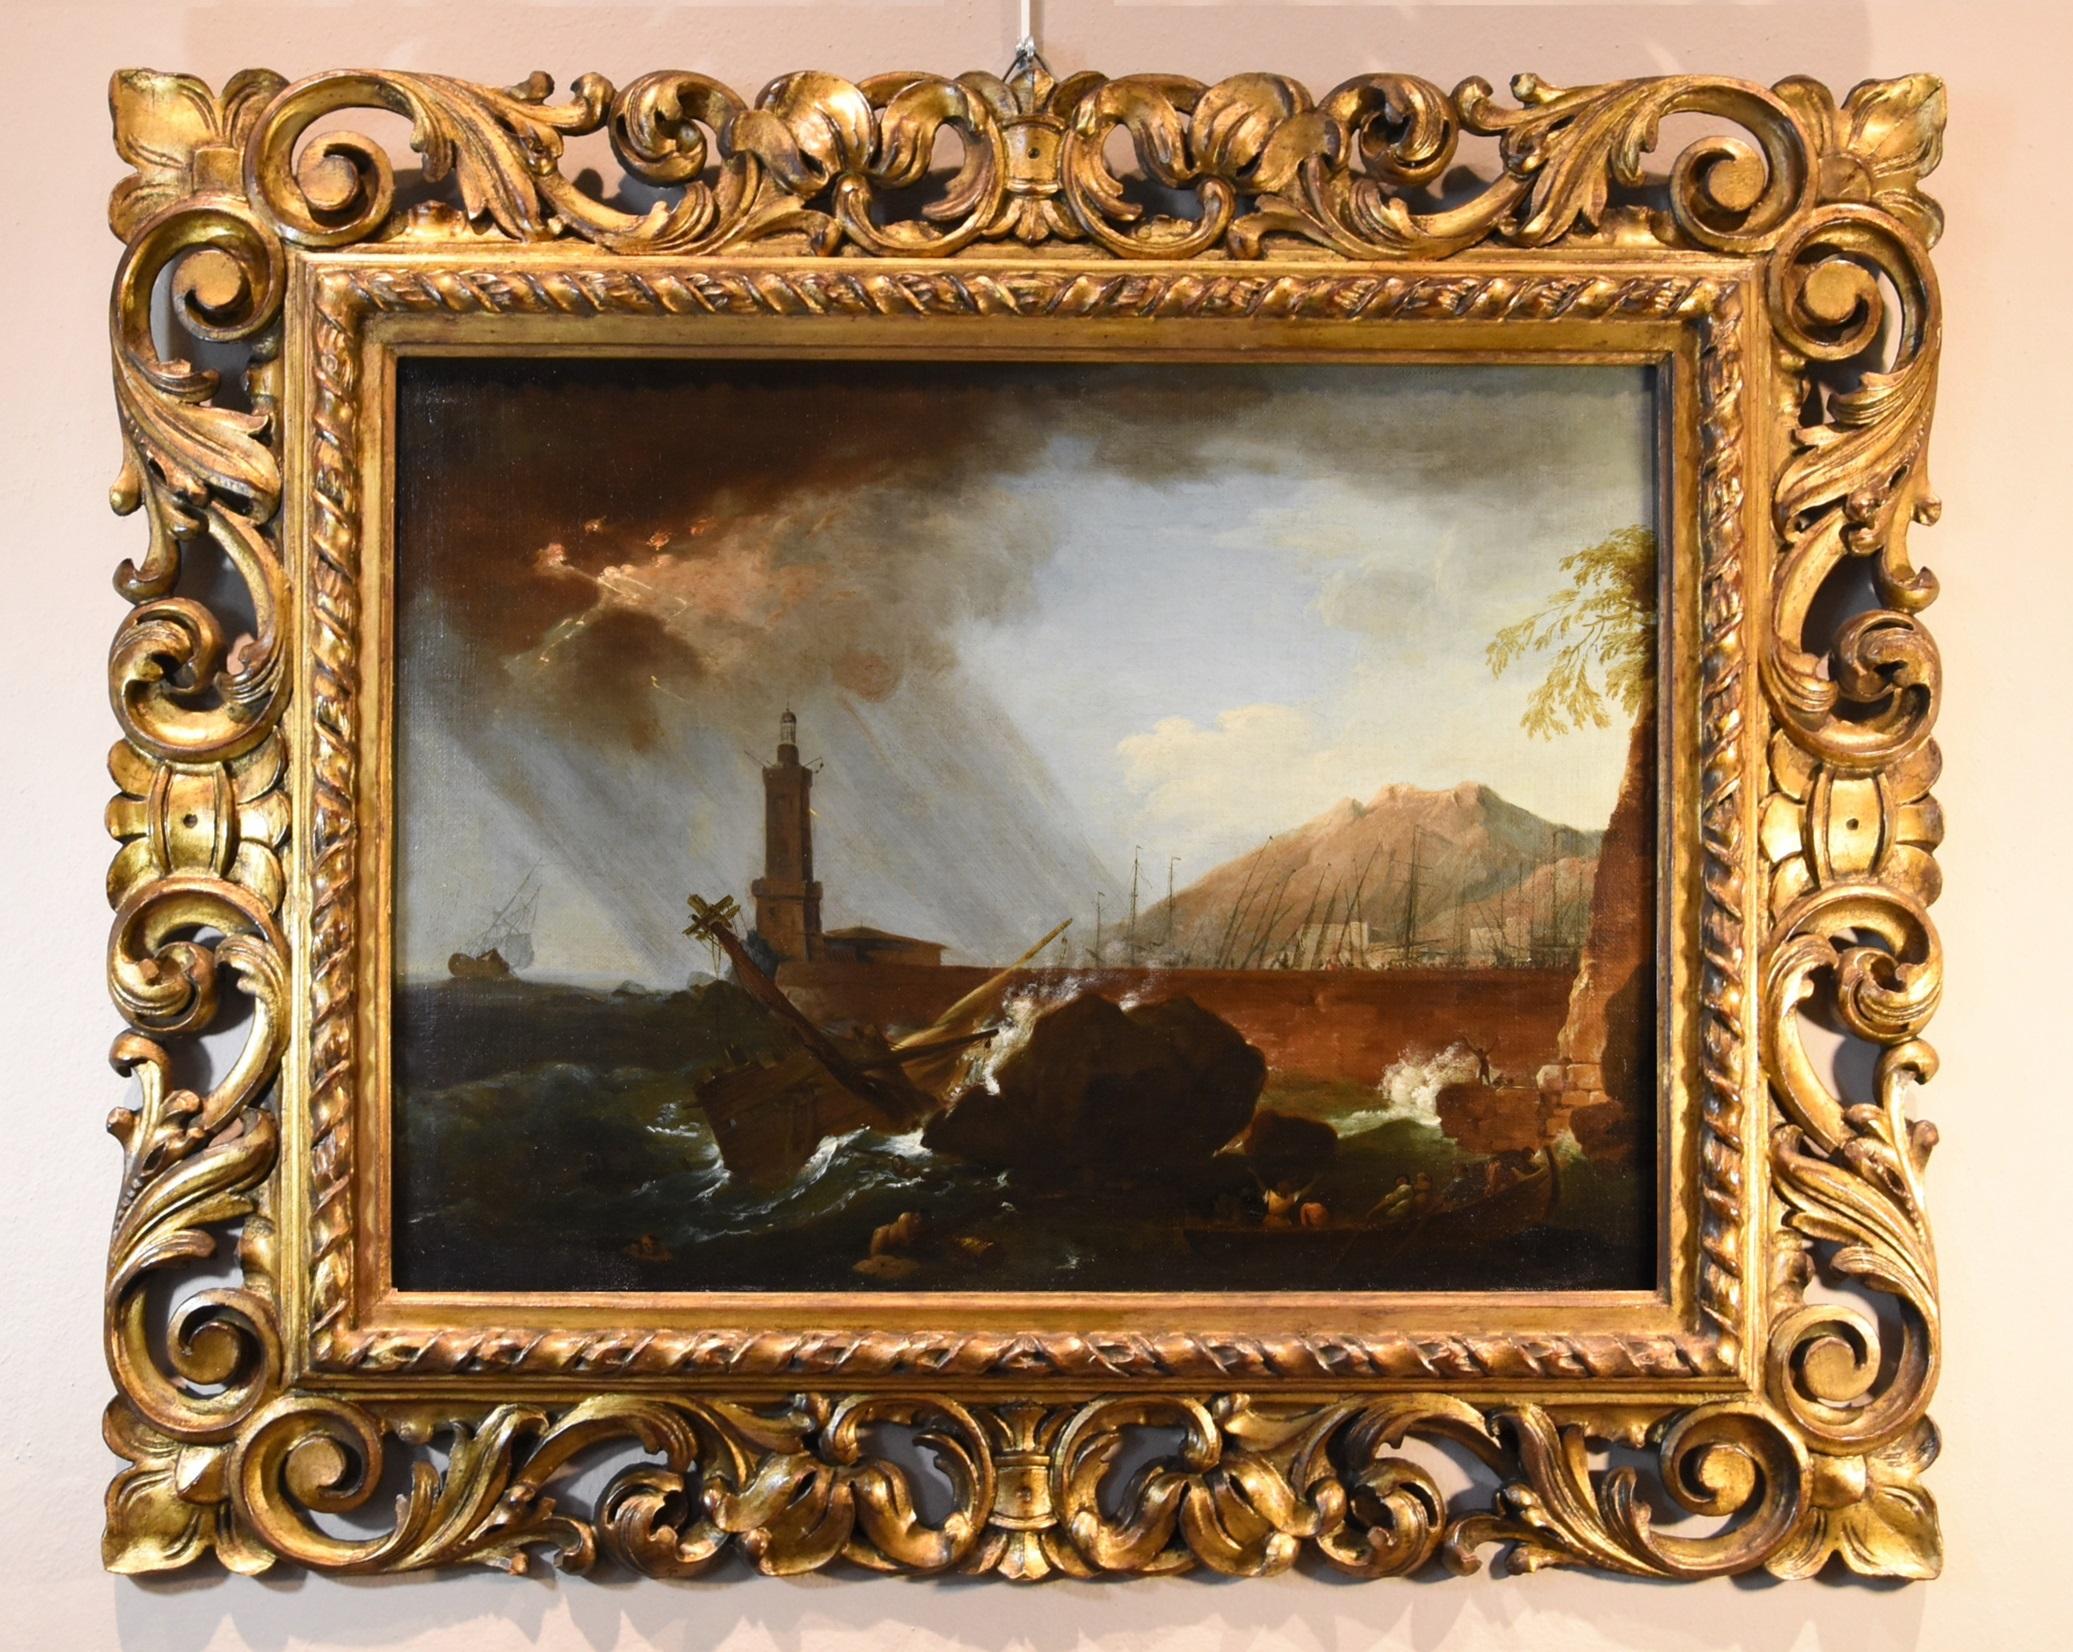 Storm See Wasserlandschaft Vernet 18. Jahrhundert Gemälde Öl auf Leinwand Alter Meister  – Painting von Claude-joseph Vernet (avignon, 1714 - Paris, 1789)